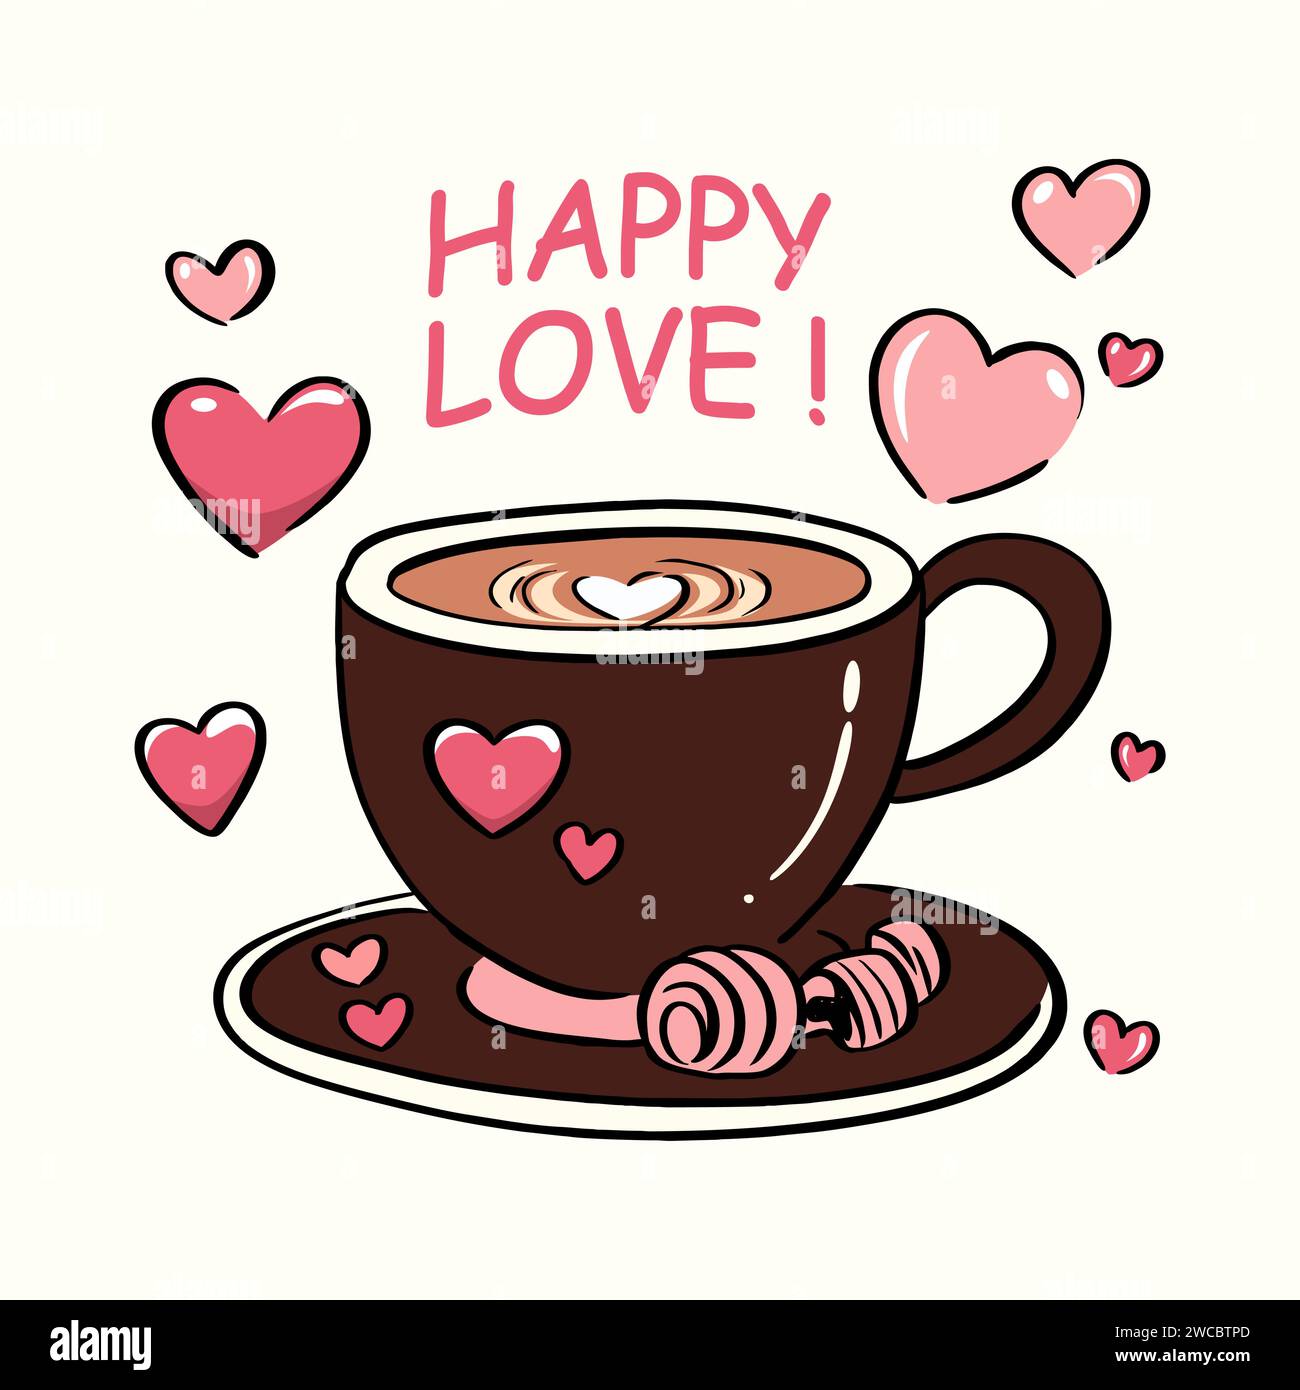 Viziati con il calore dell'amore con questa deliziosa illustrazione vettoriale intitolata "Brewed Bliss: Cute Coffee Cup for San Valentino". Questa affascinante ardue Illustrazione Vettoriale